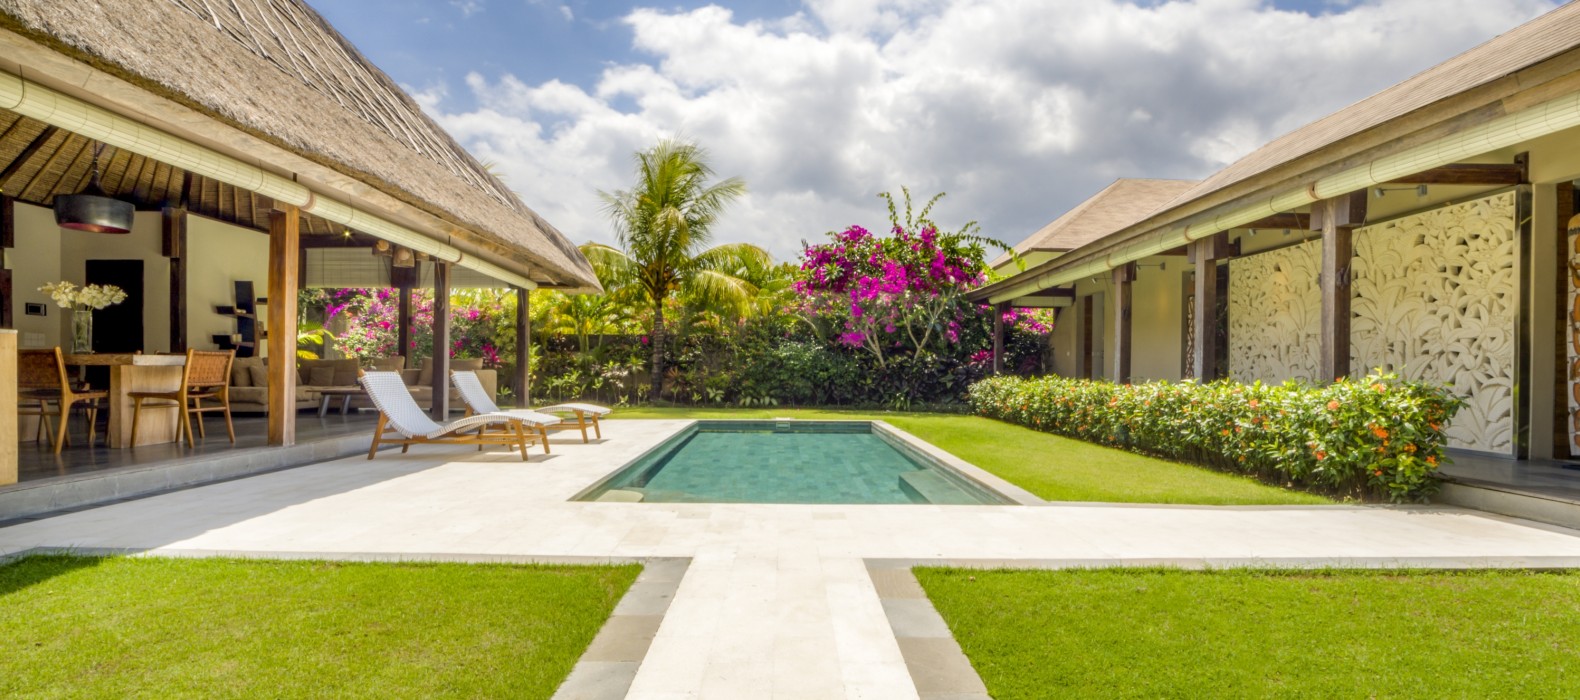 Exterior pool view of Villa Kabutera in Bali